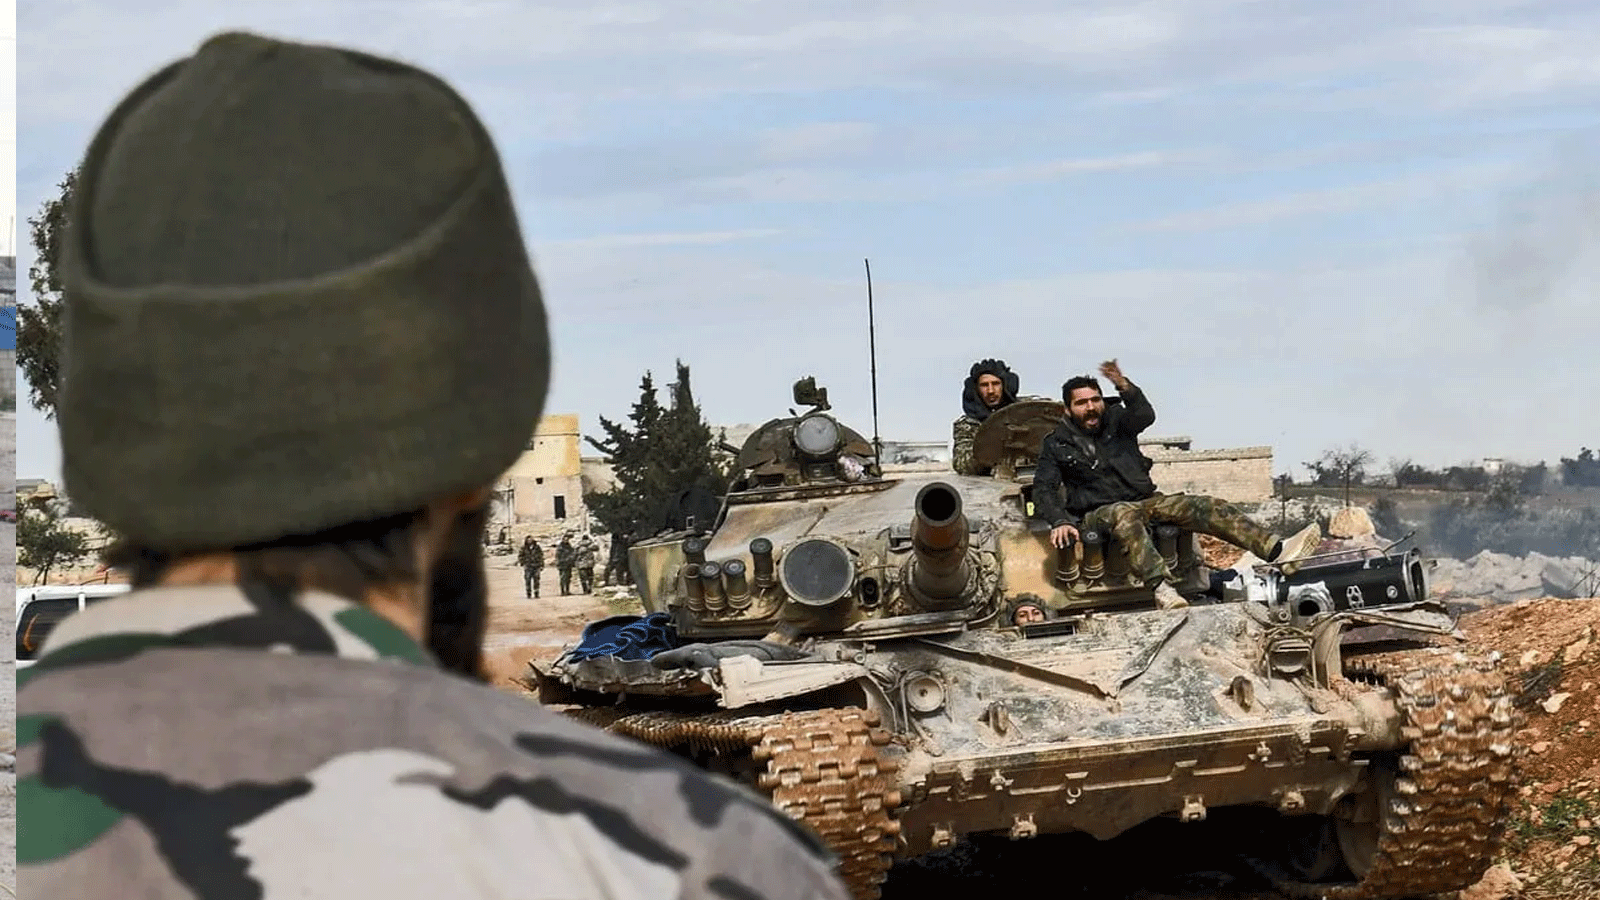 جنود الحكومة السورية يجلسون فوق دبابة في سوريا في 1شبط\ فبراير 2020.